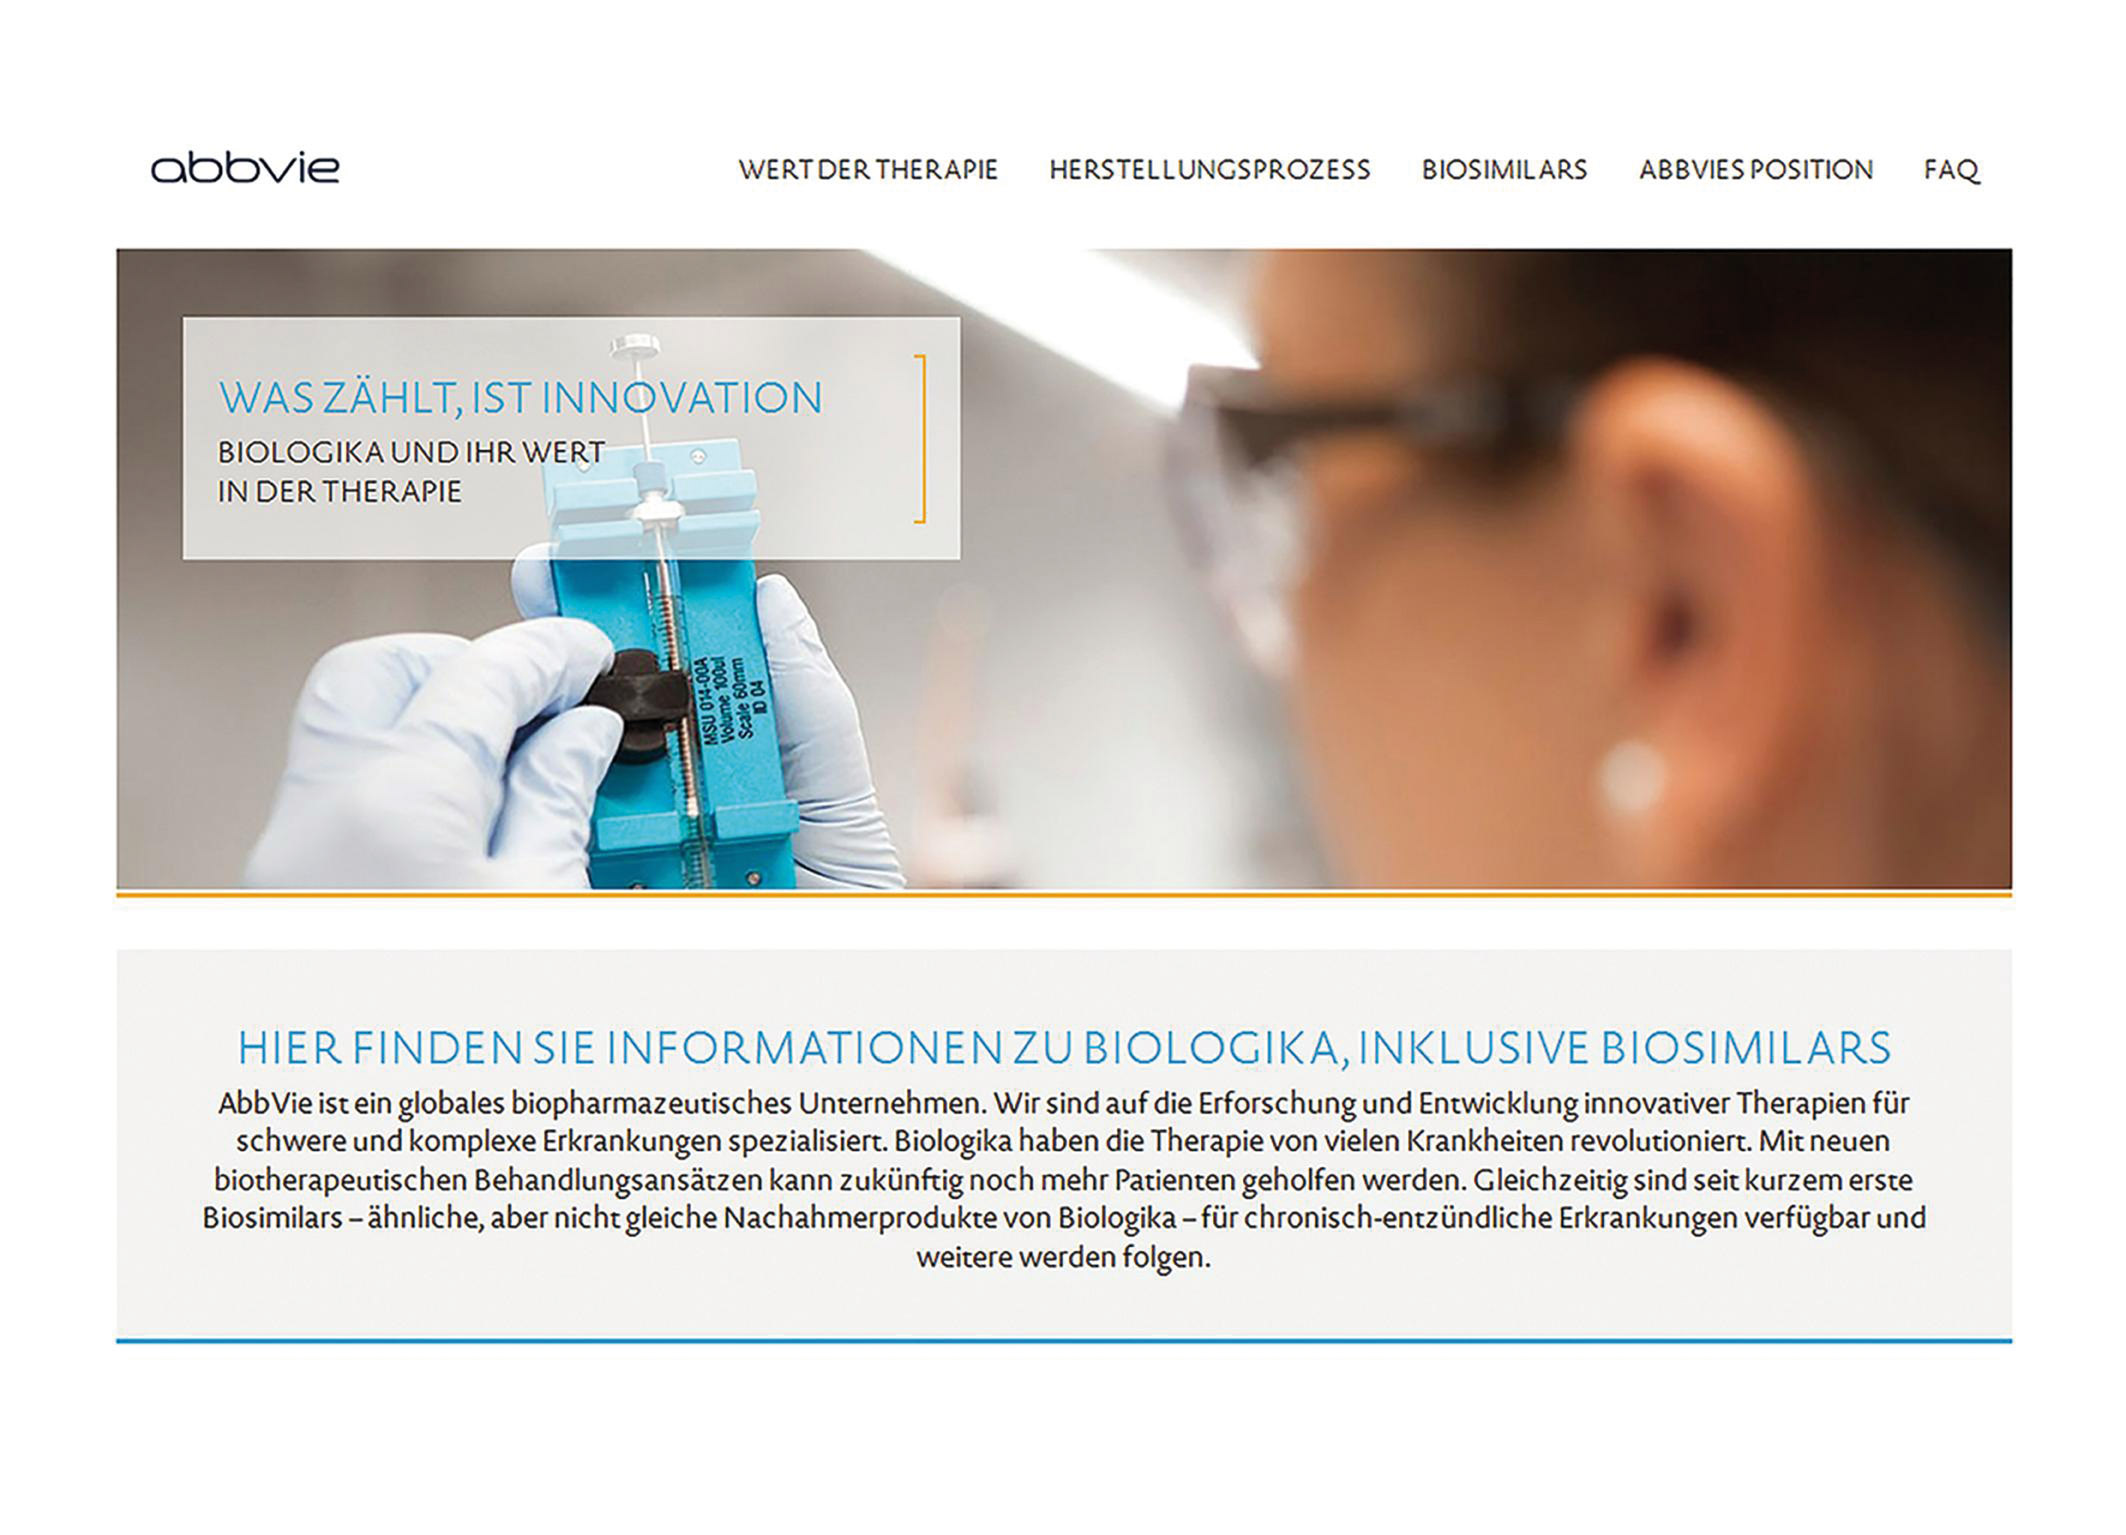 AbbVie mit neuer Website über Biologika und Biosimilars